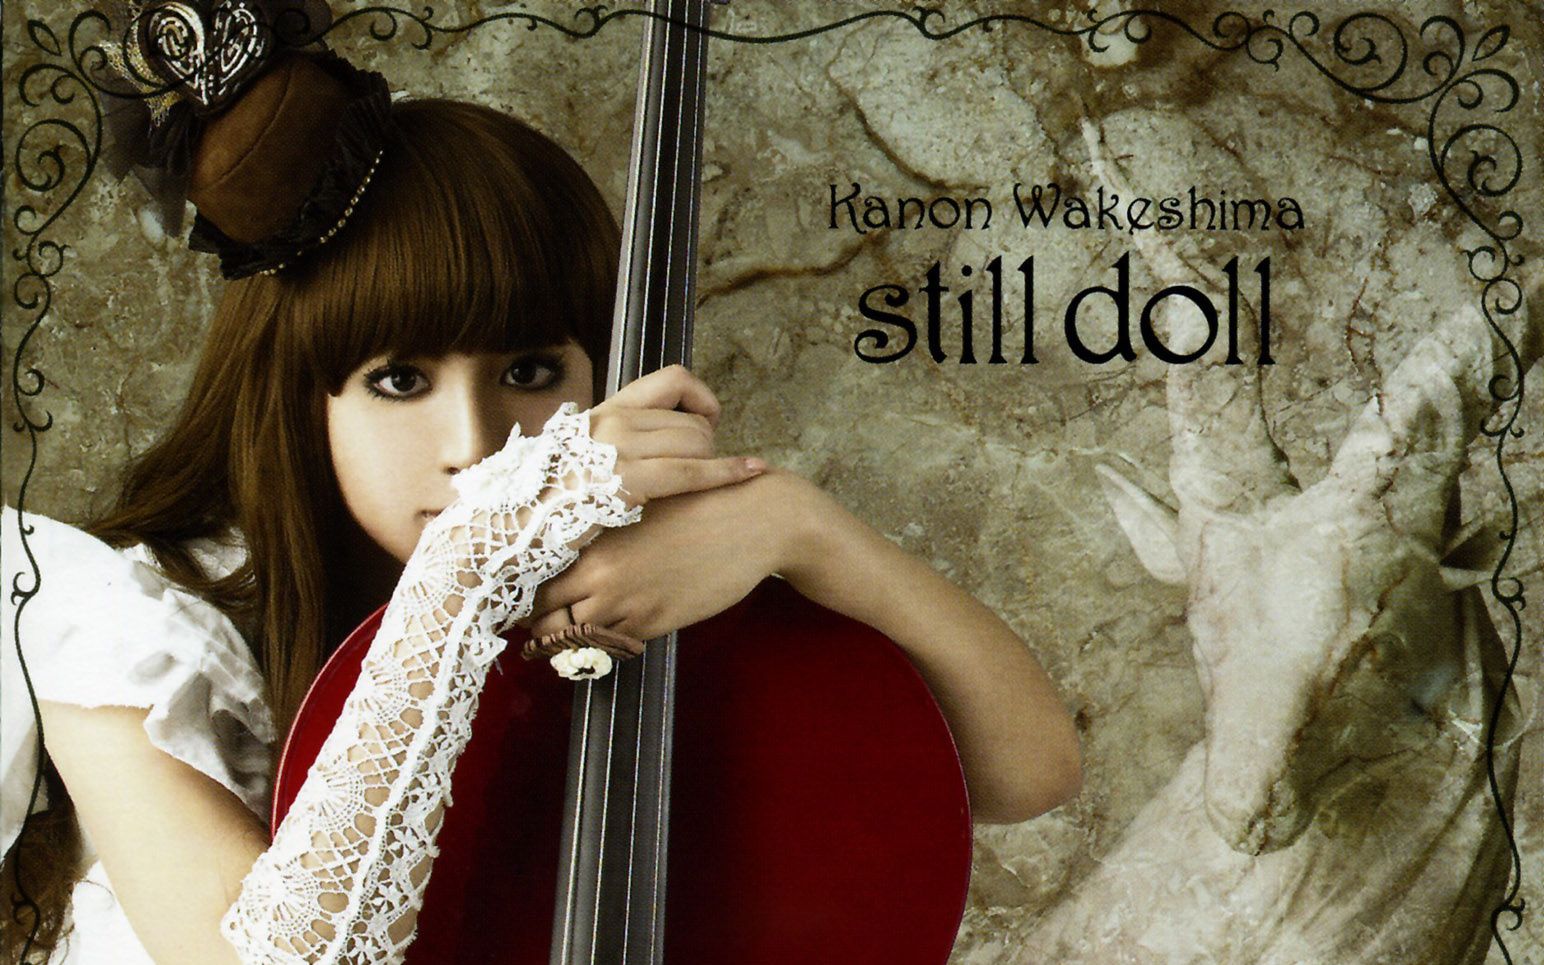 吸血鬼骑士ED1-still doll (祈Inory中文填词版) (原唱分岛花音)